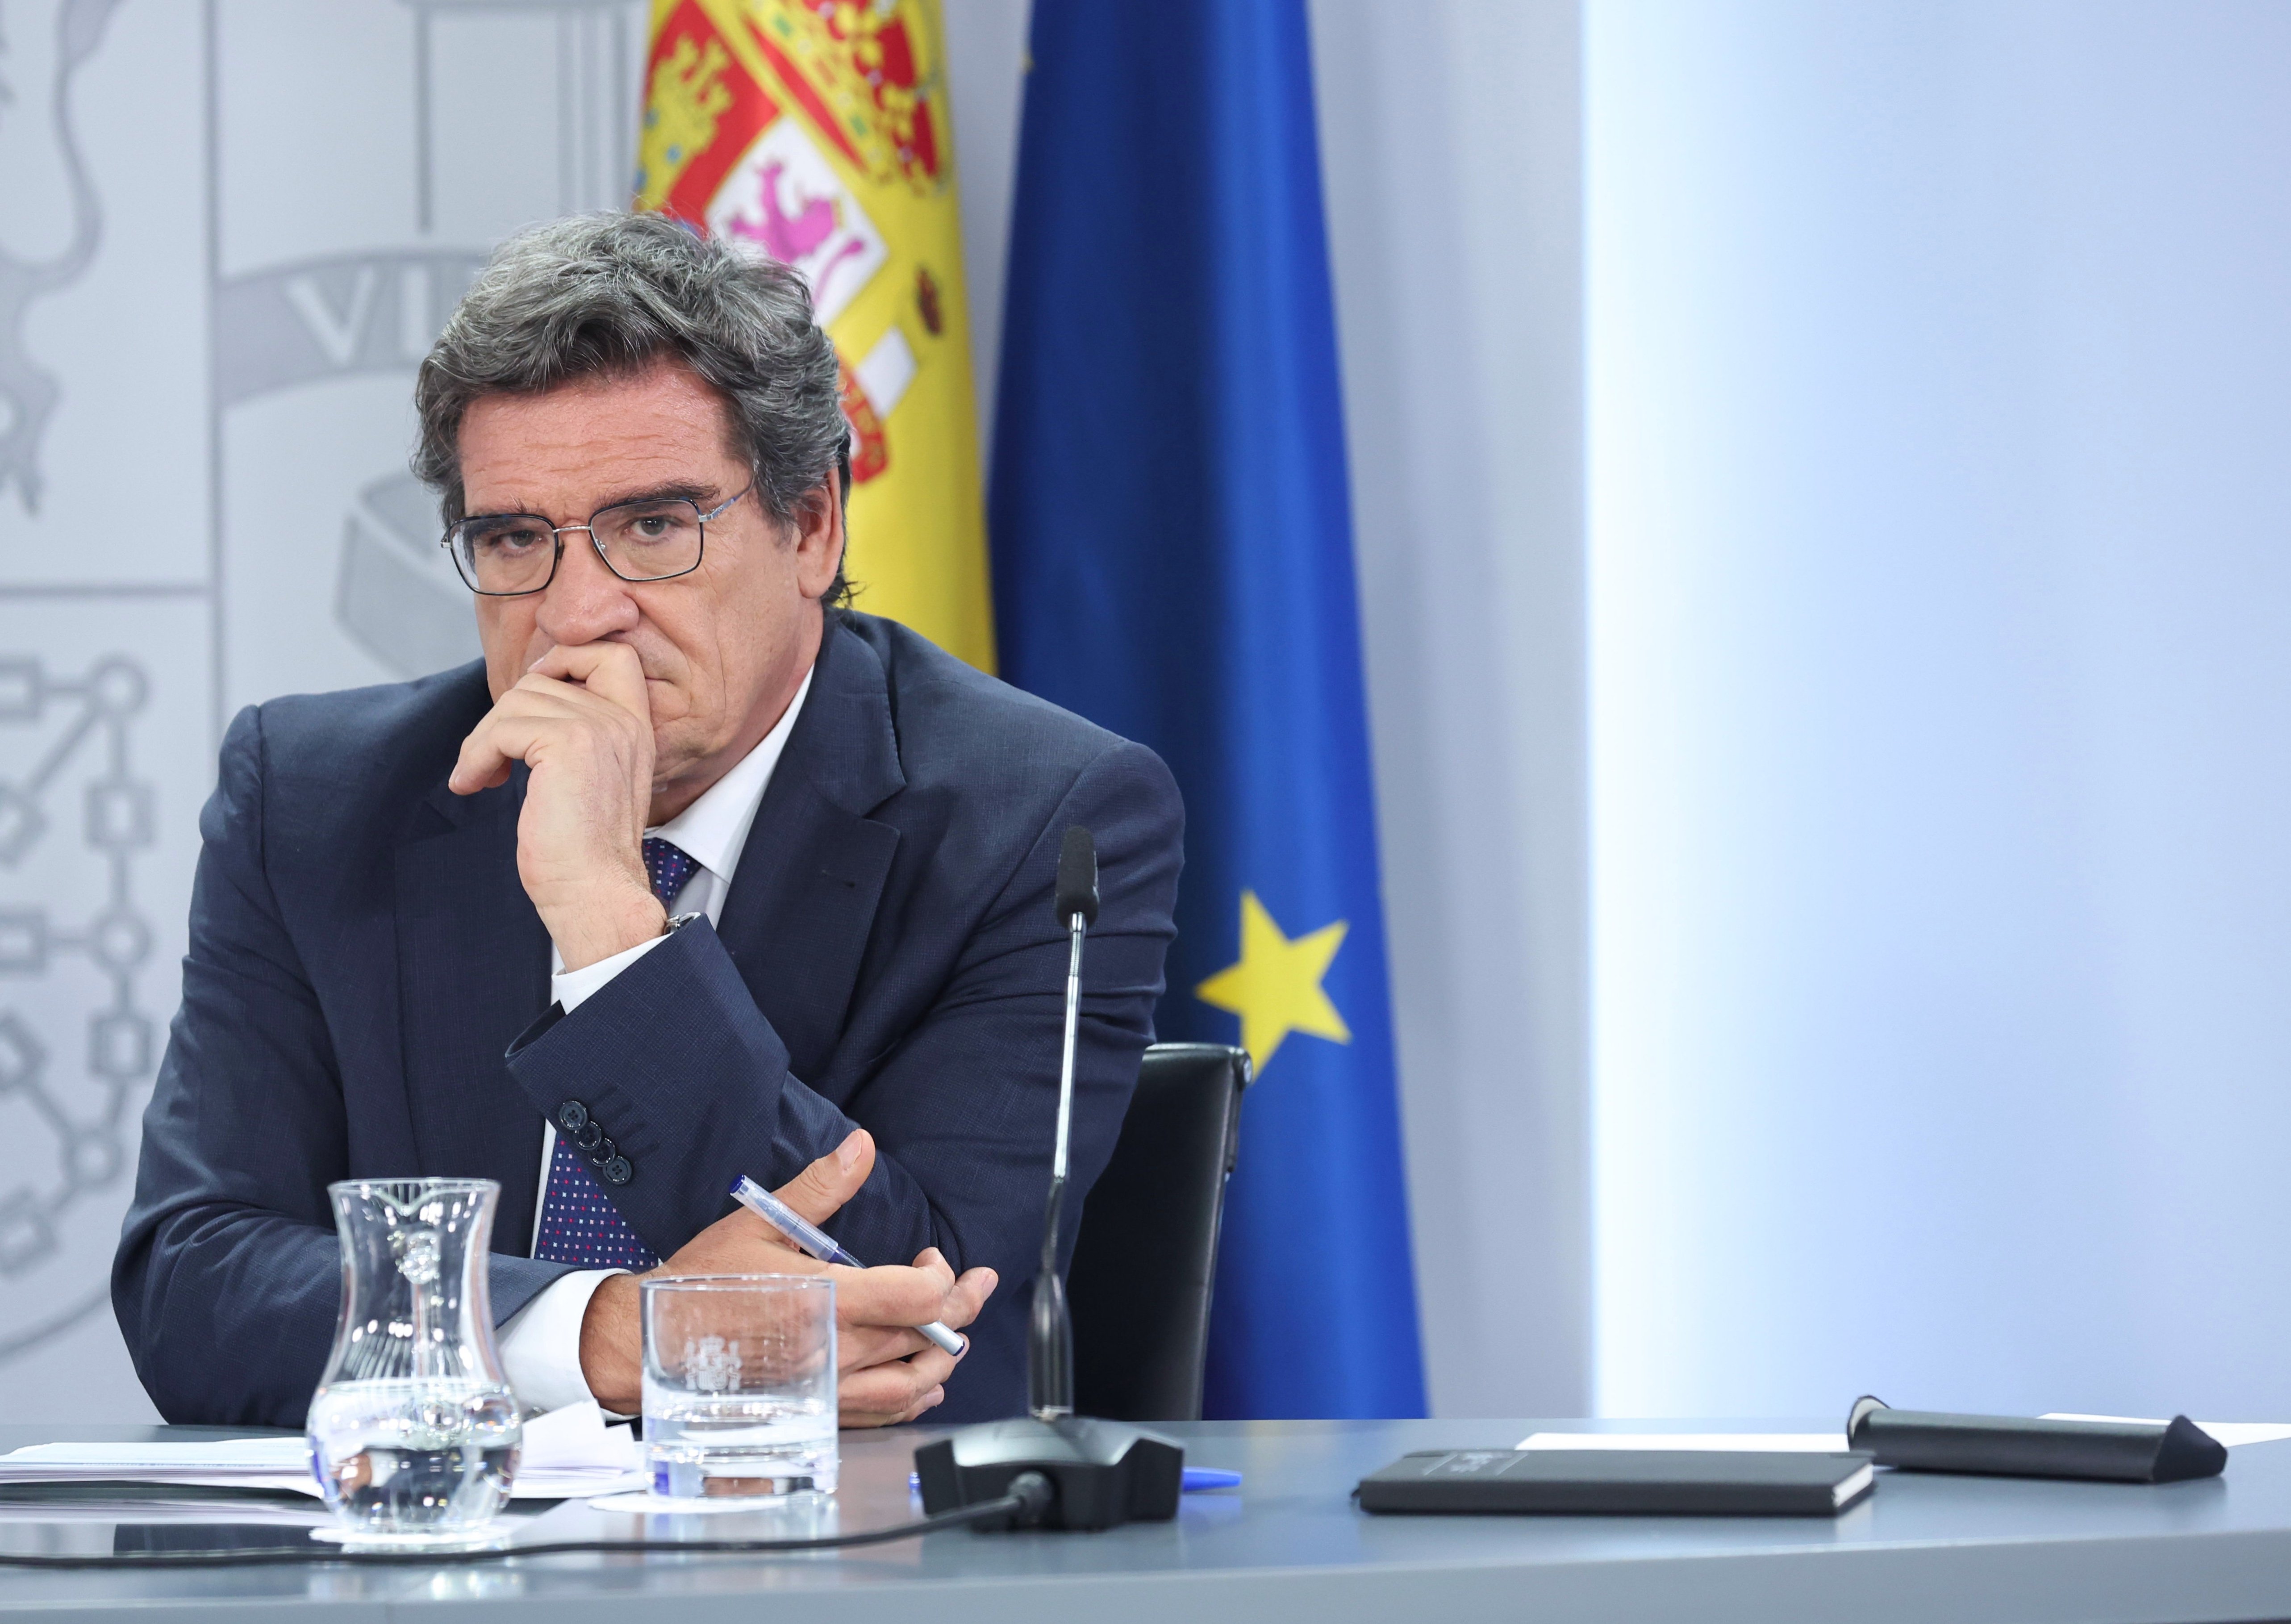 El govern espanyol proposa ampliar el càlcul de la pensió a 30 anys, descartant els dos pitjors